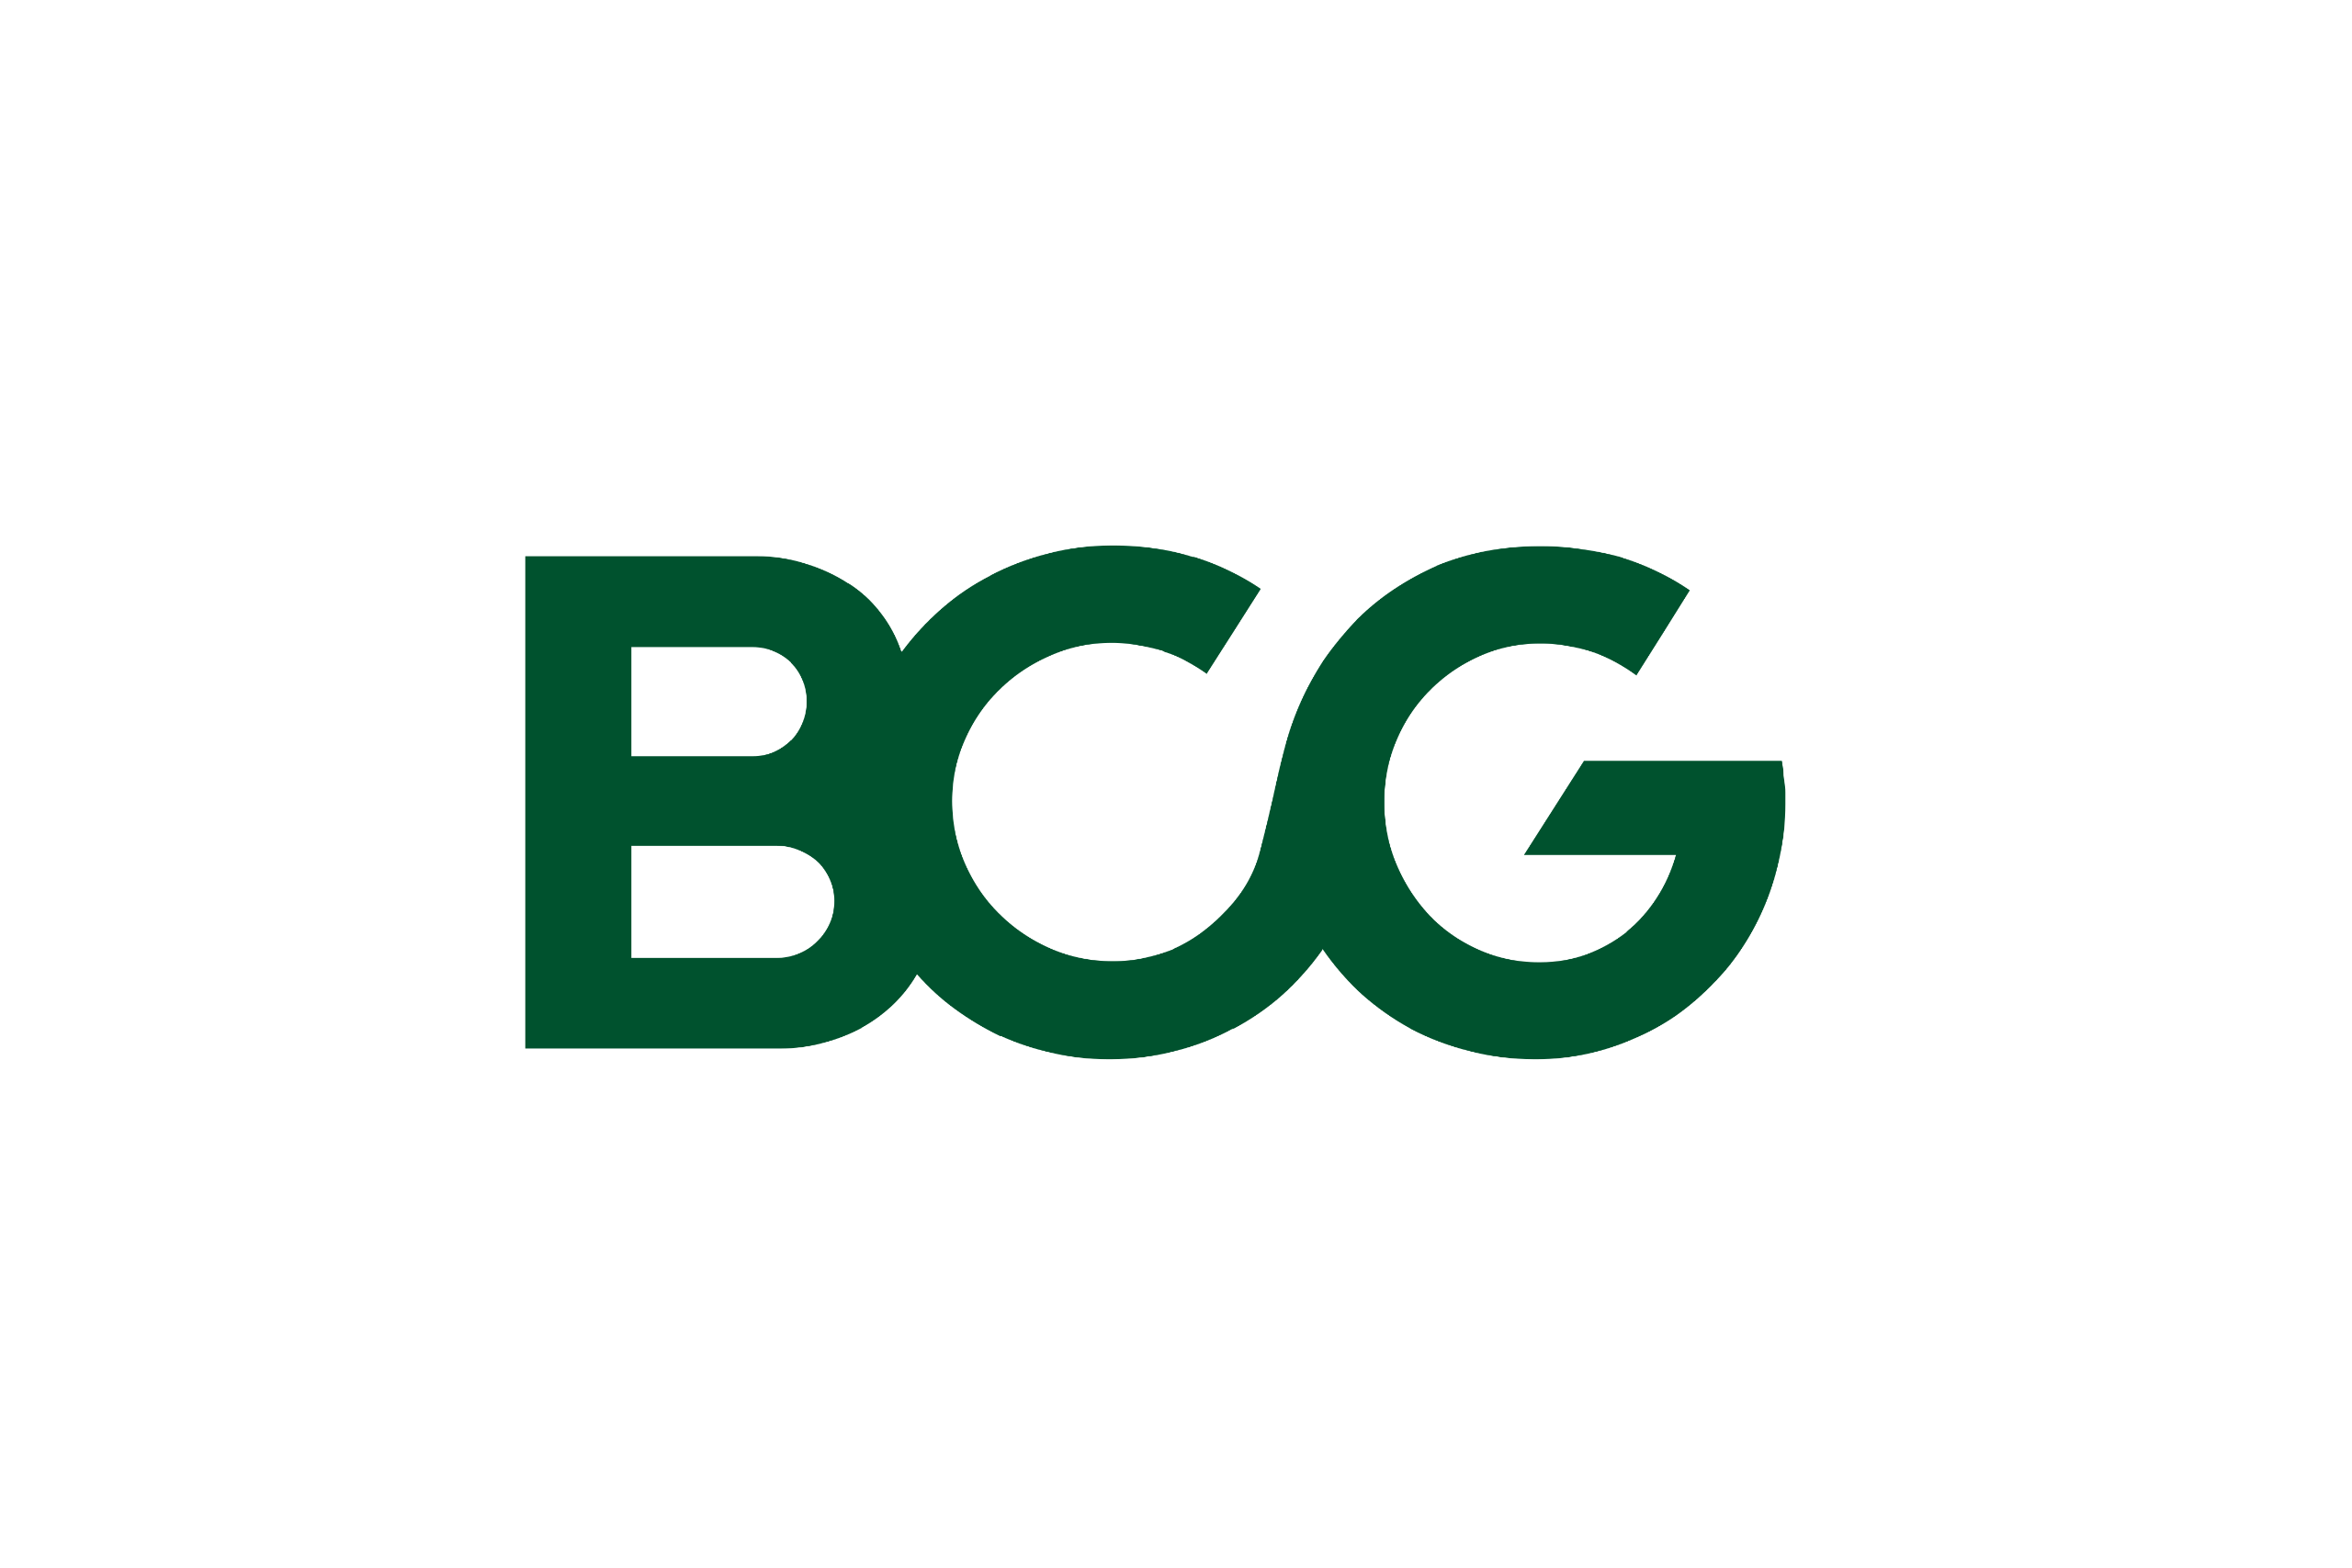 bcg_logo-2